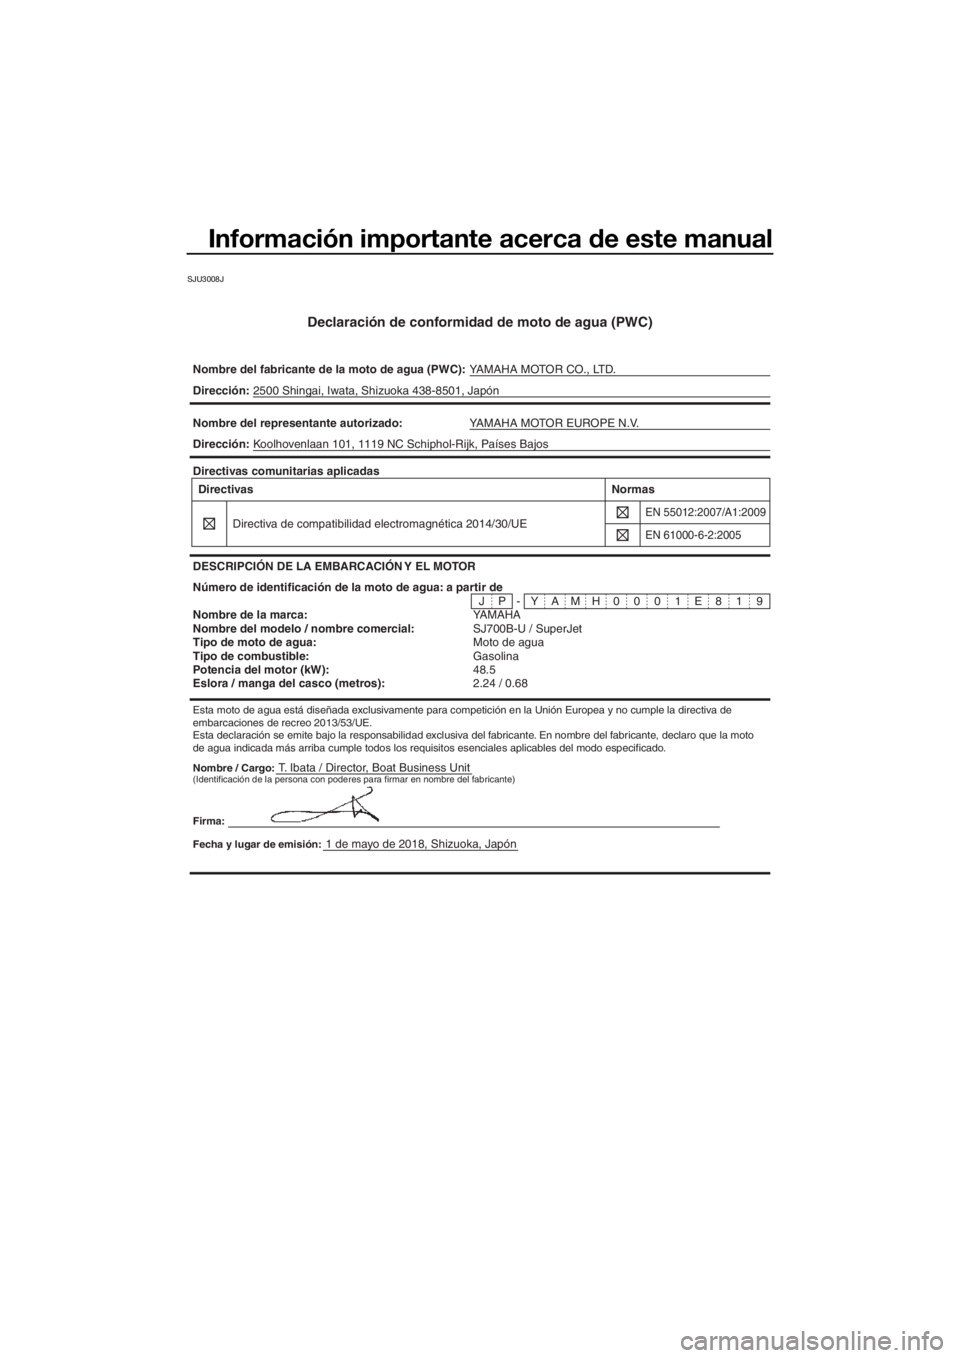 YAMAHA SUPERJET 2019  Manuale de Empleo (in Spanish) Información importante acerca de este manual
SJU3008J
Declaración de conformidad de moto de agua (PWC)
Nombre del fabricante de la moto de agua (PWC):YAMAHA MOTOR CO., LTD.
Nombre / Cargo:T. Ibata /